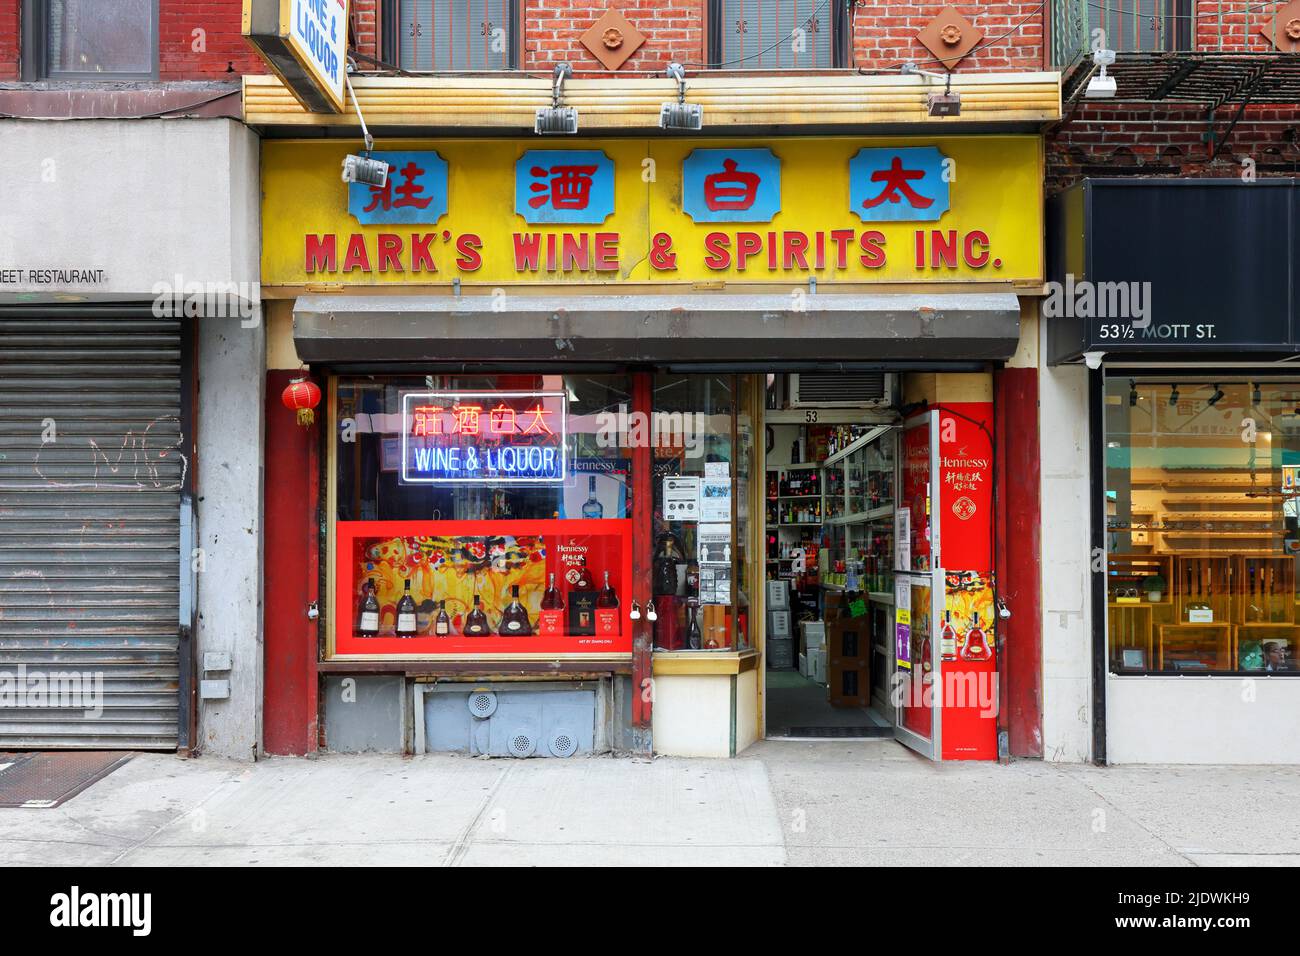 Mark's Wine & Spirits 太白酒莊, 53 Mott St, New York, NYC Foto von einem Spirituosengeschäft in Manhattan, Chinatown. Stockfoto